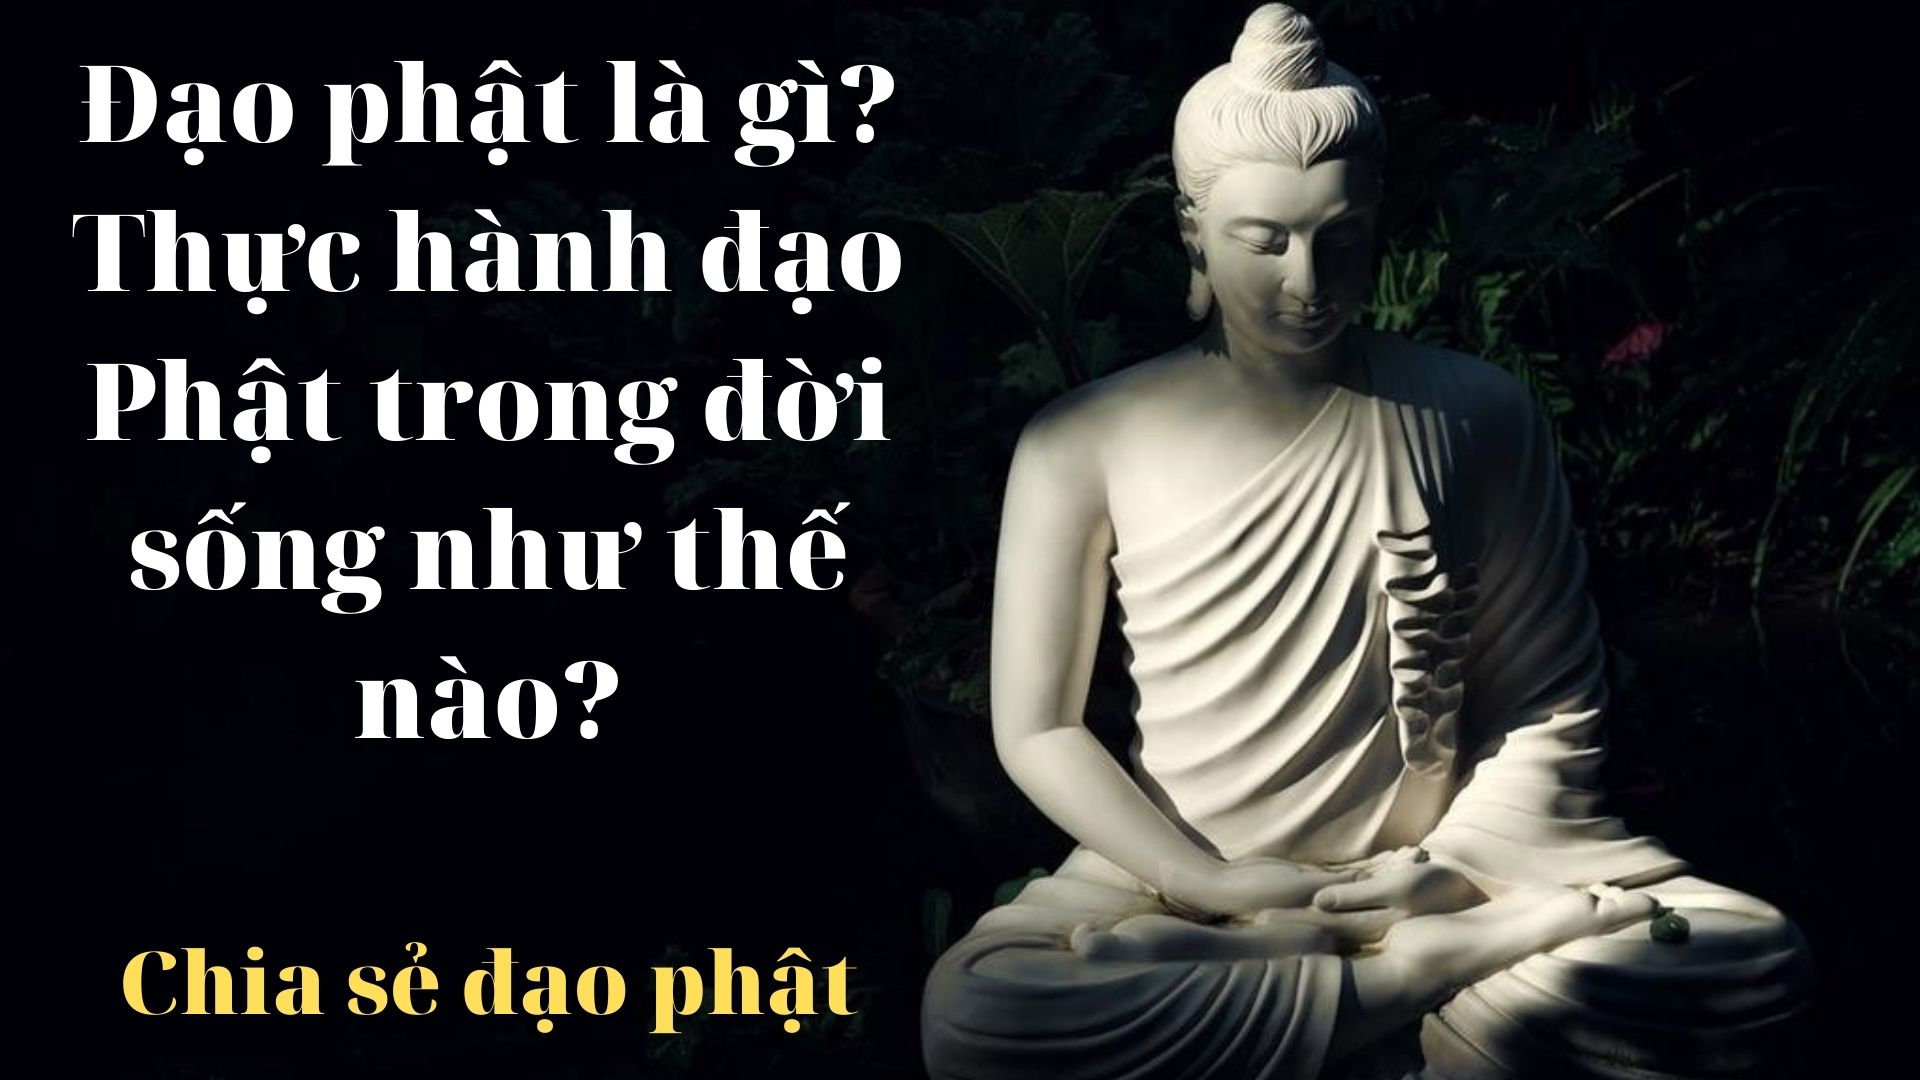 Đạo phật là gì? Thực hành đạo Phật trong đời sống như thế nào?